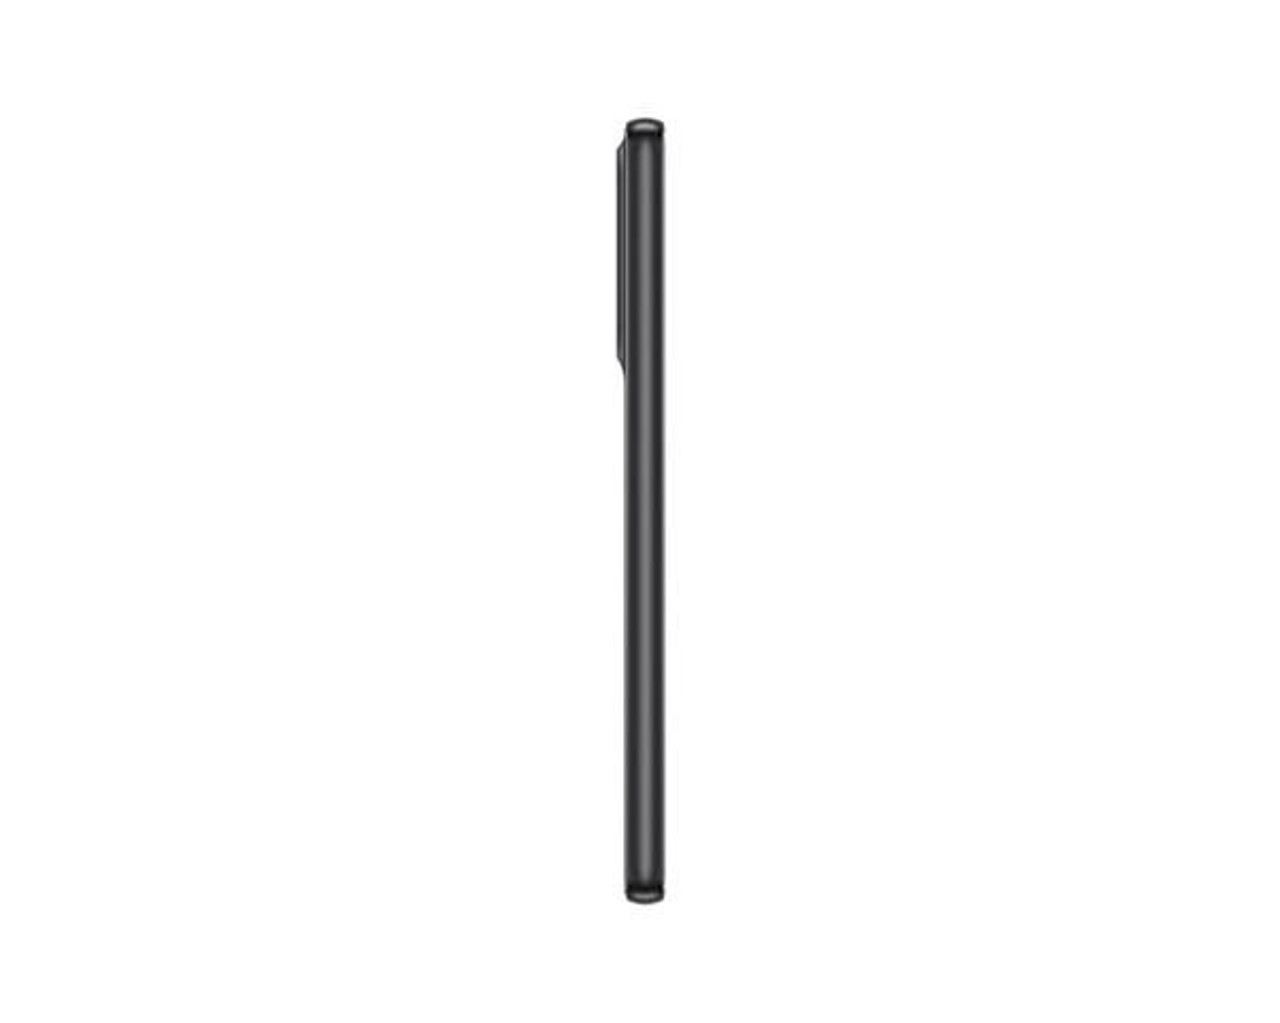 SAMSUNG Galaxy A33 Sm-a336b - Awesome Black - 6GB 128GB - 5g - 6.4in -  SM-A336BZKGEUB - /fr